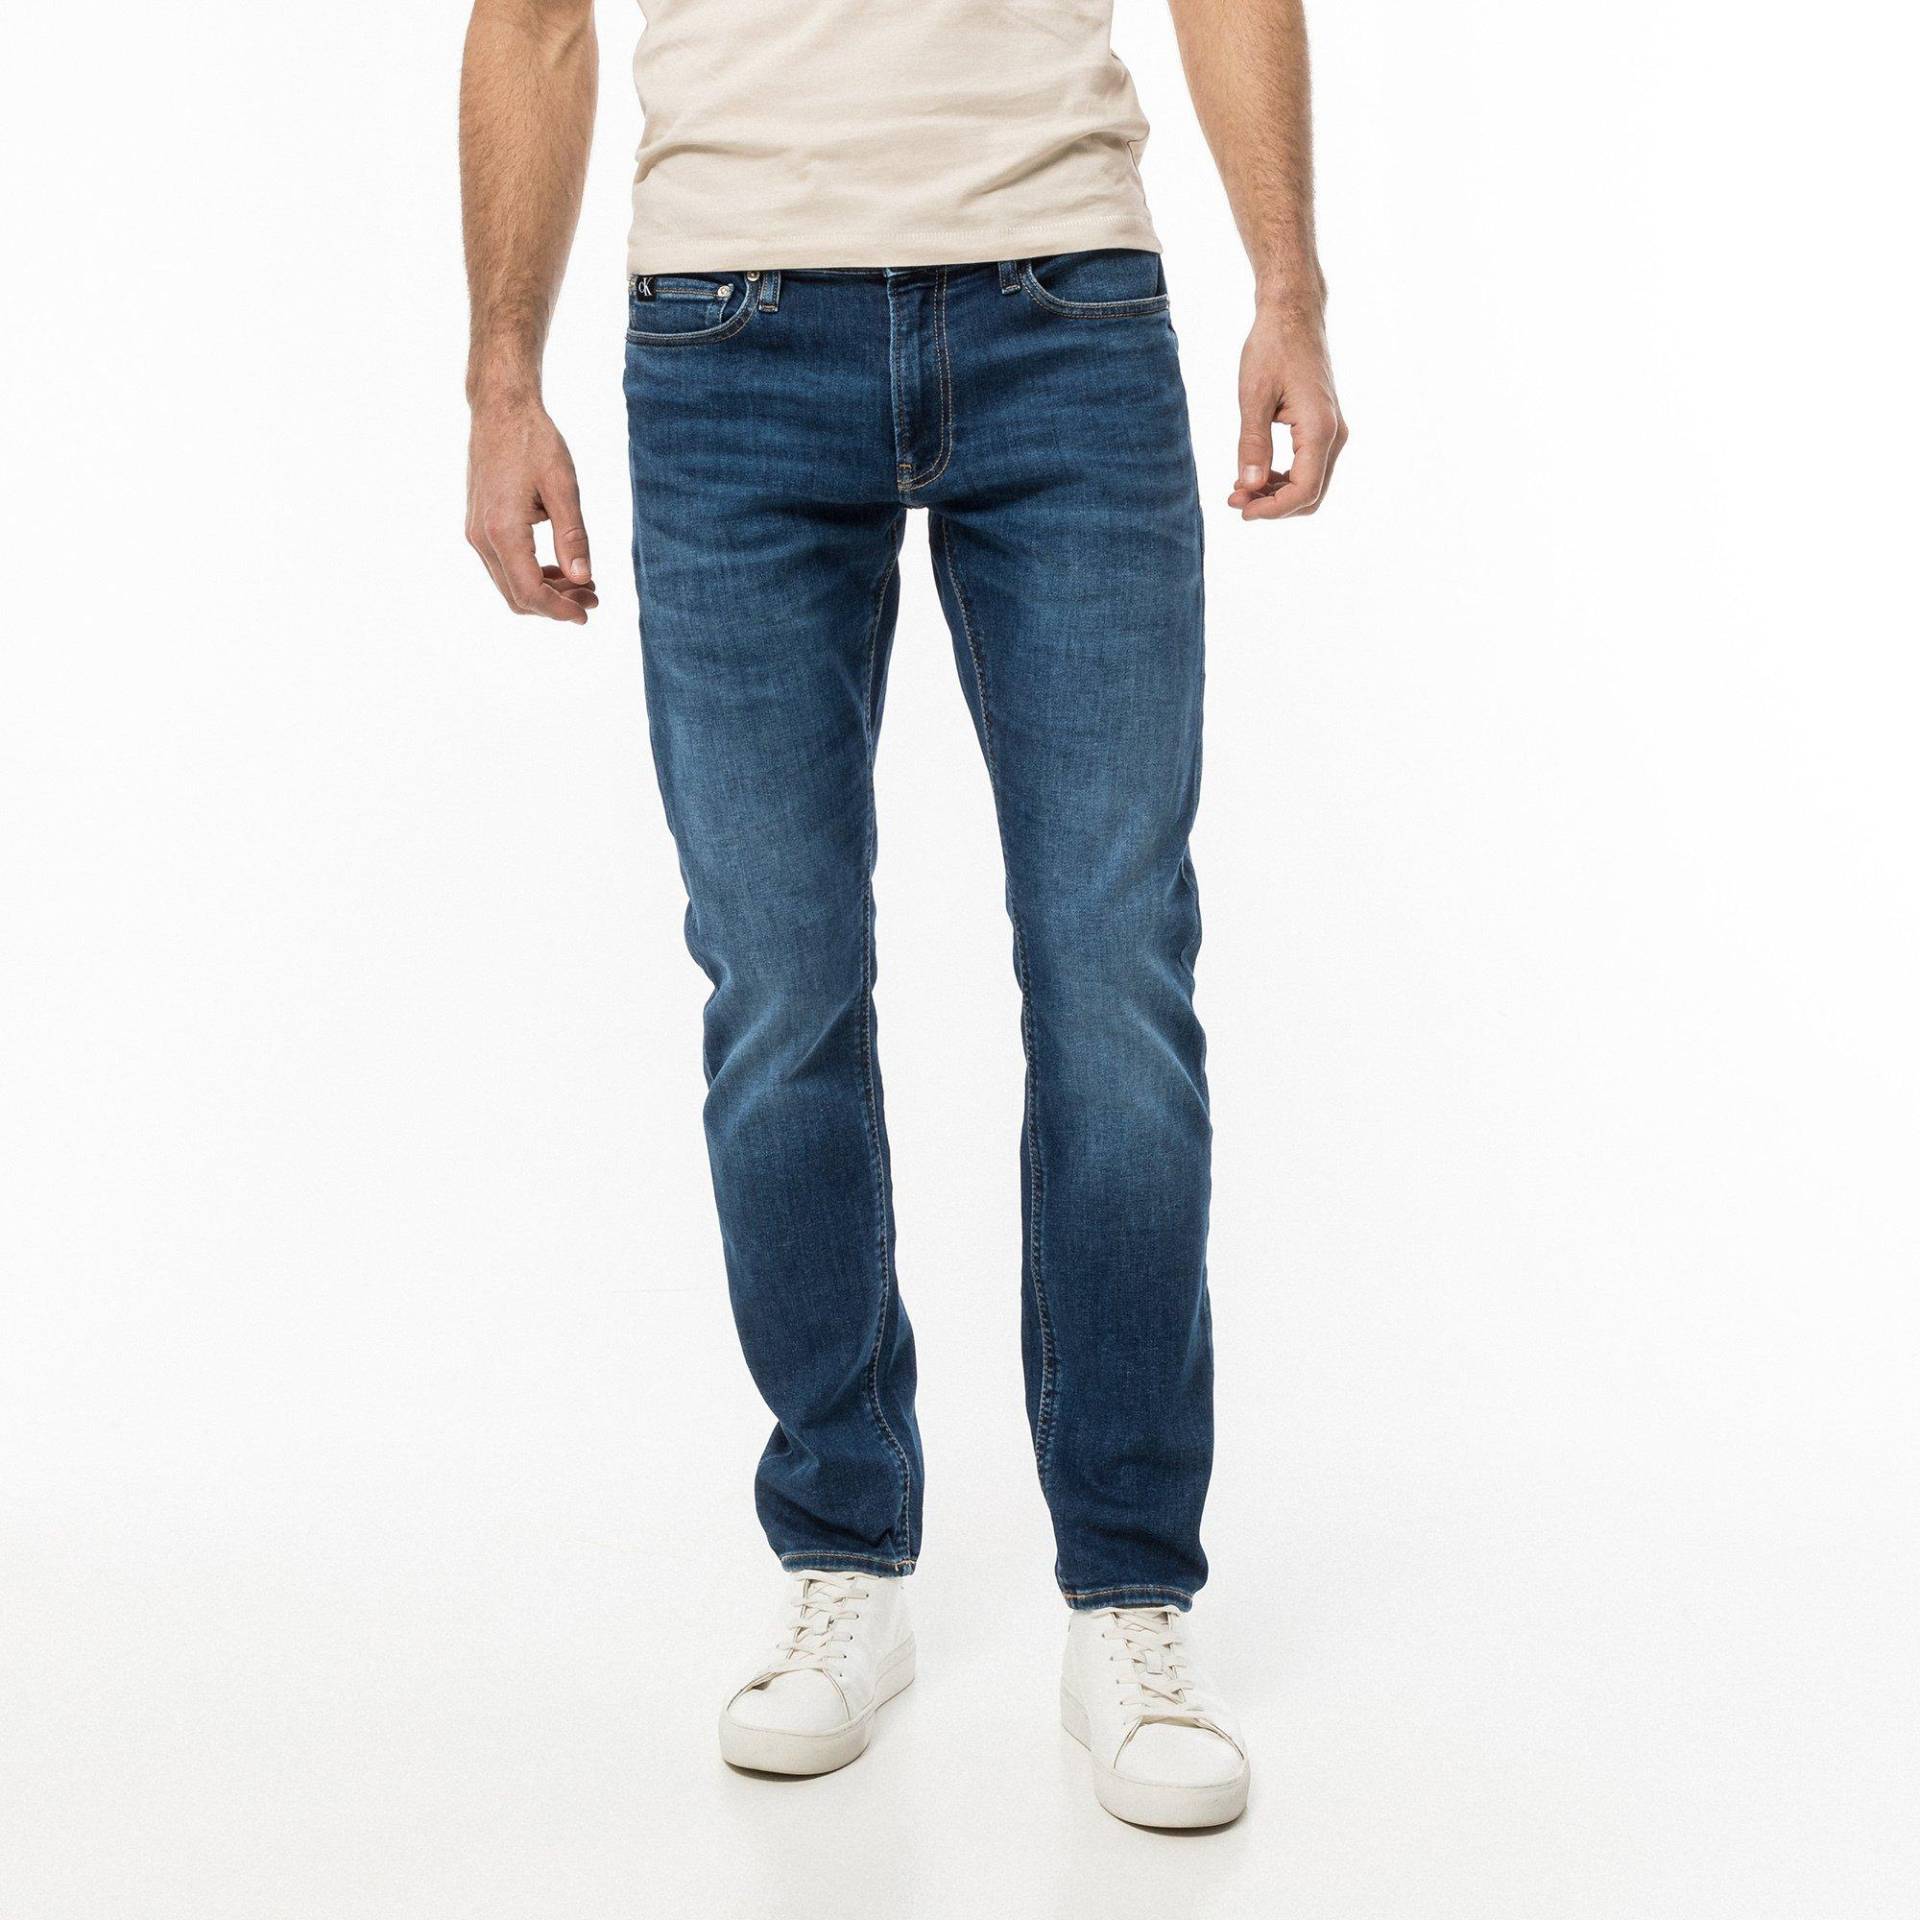 Jeans, Slim Fit Herren Dunkelblau L34/W33 von Calvin Klein Jeans